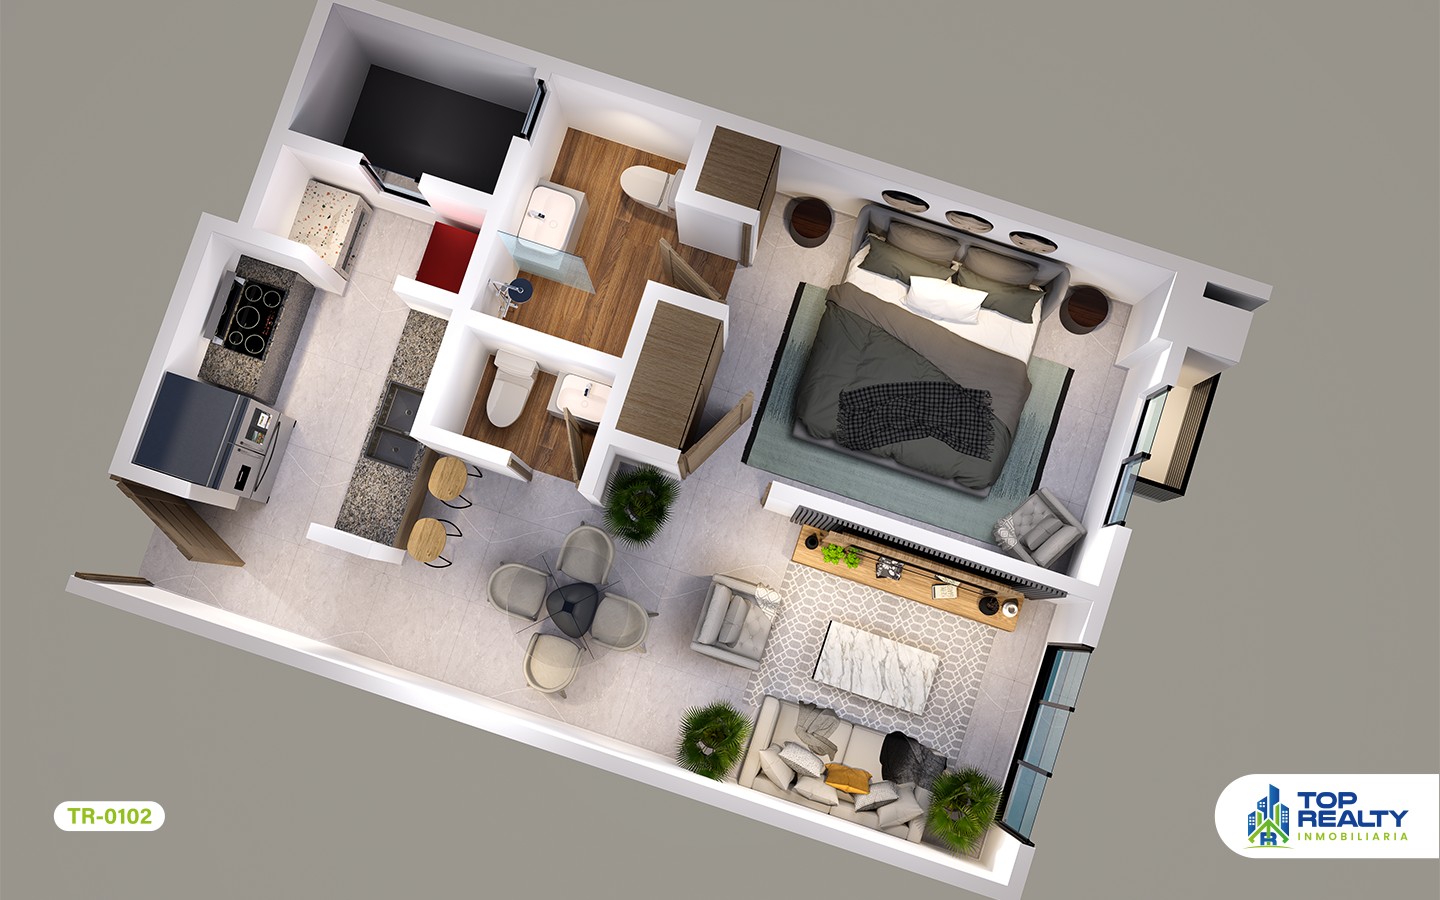 apartamentos - TR-0102 A: Lujo Íntimo: Apartamentos 1 Hab. con Amenidades Exclusivas (AirBnb) 4